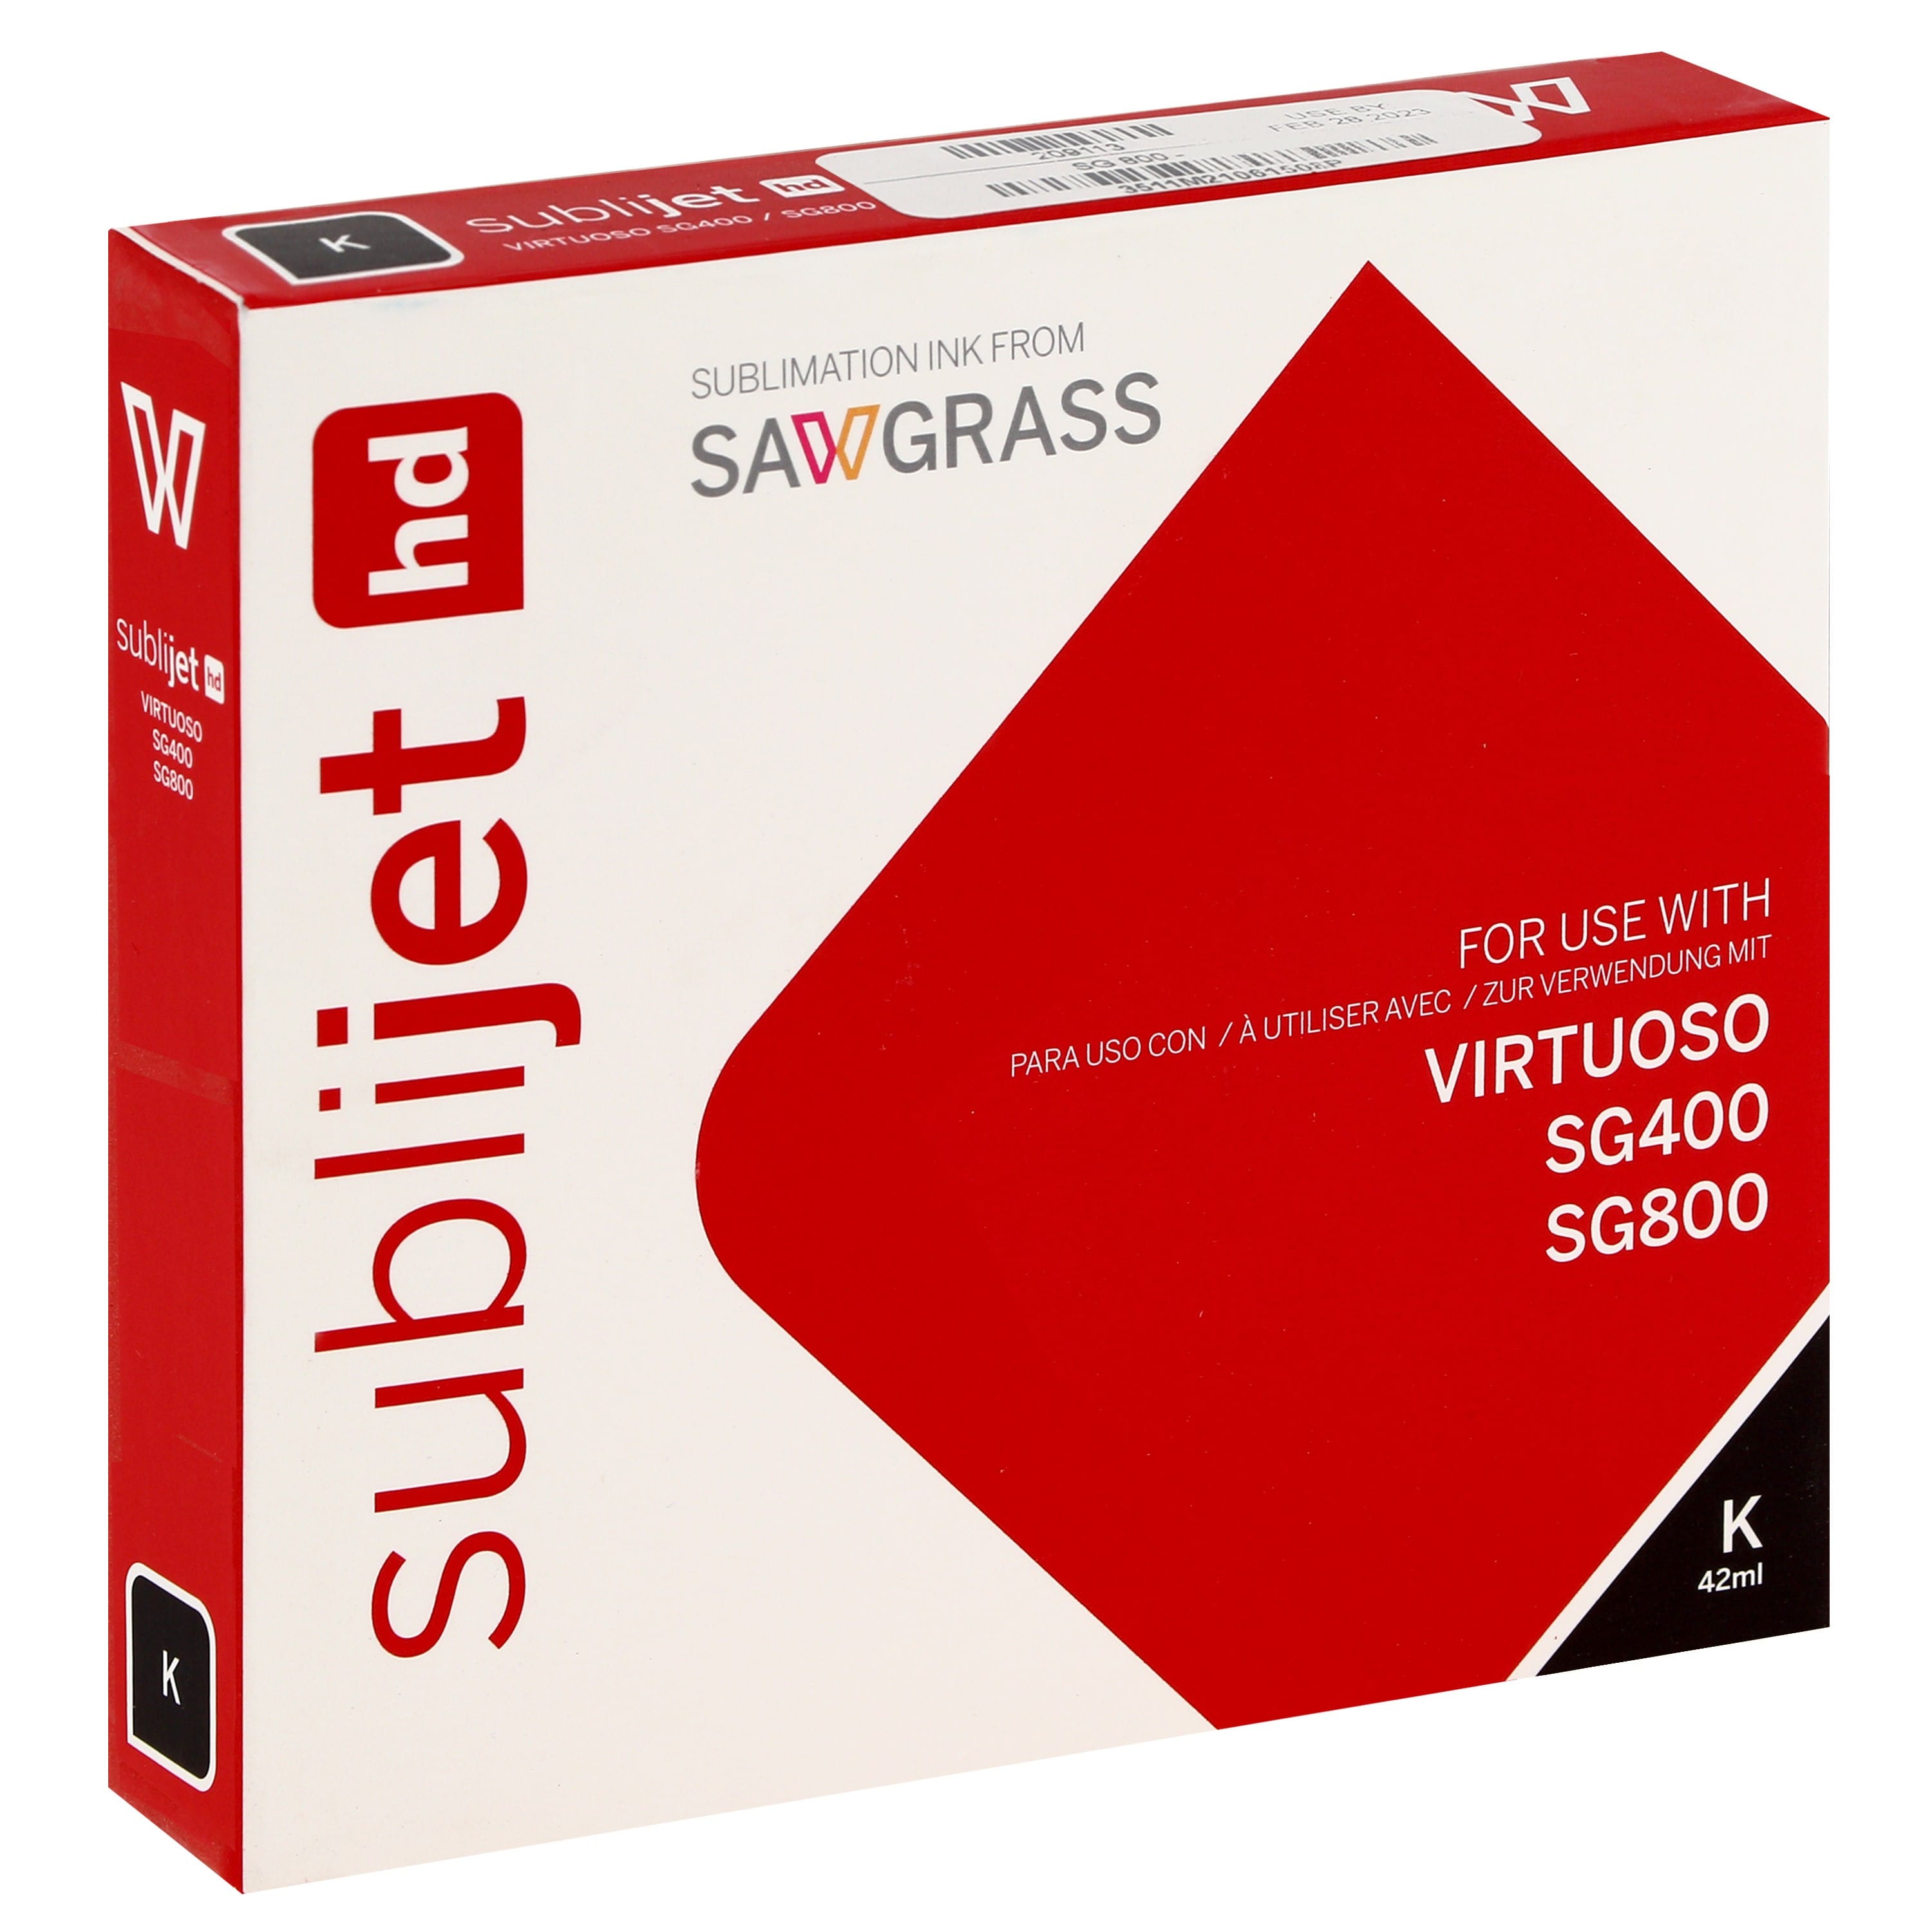 SAWGRASS - Encre sublimation Sublijet - Noire 42ml - pour Sawgrass SG400 & SG800